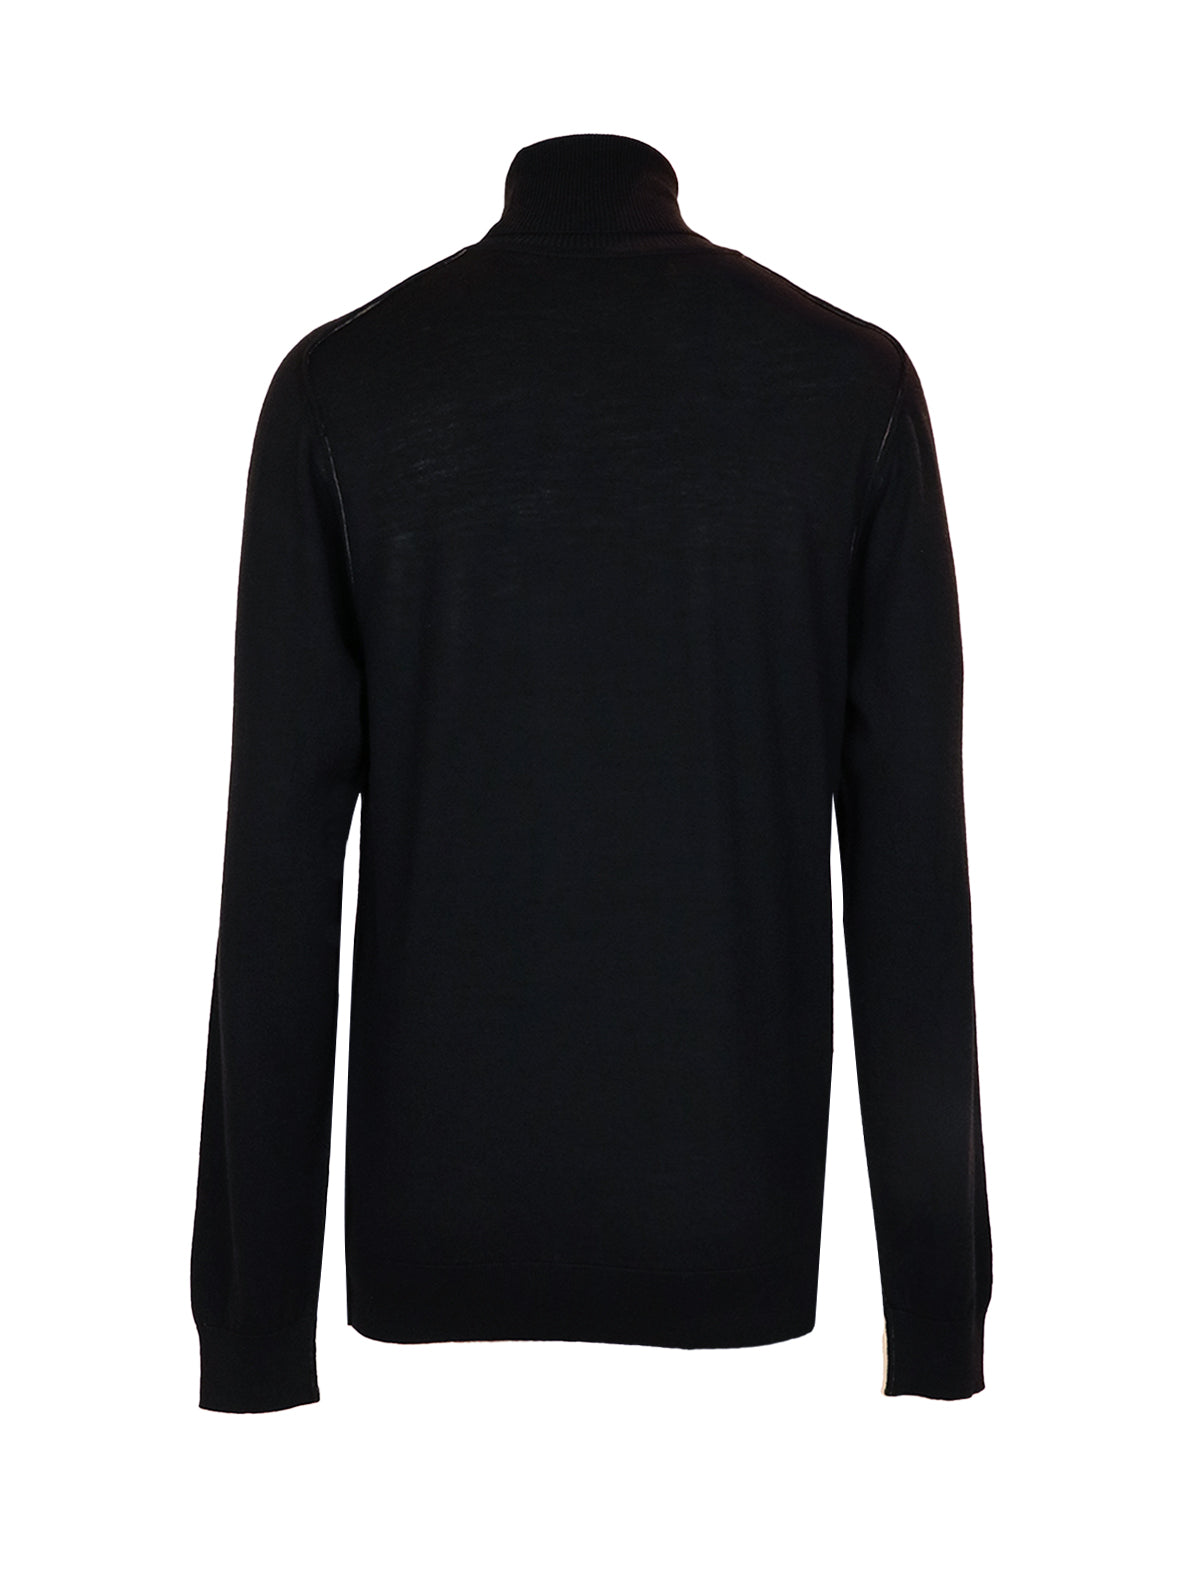 CARUSO Wool Turtleneck Sweater in Black